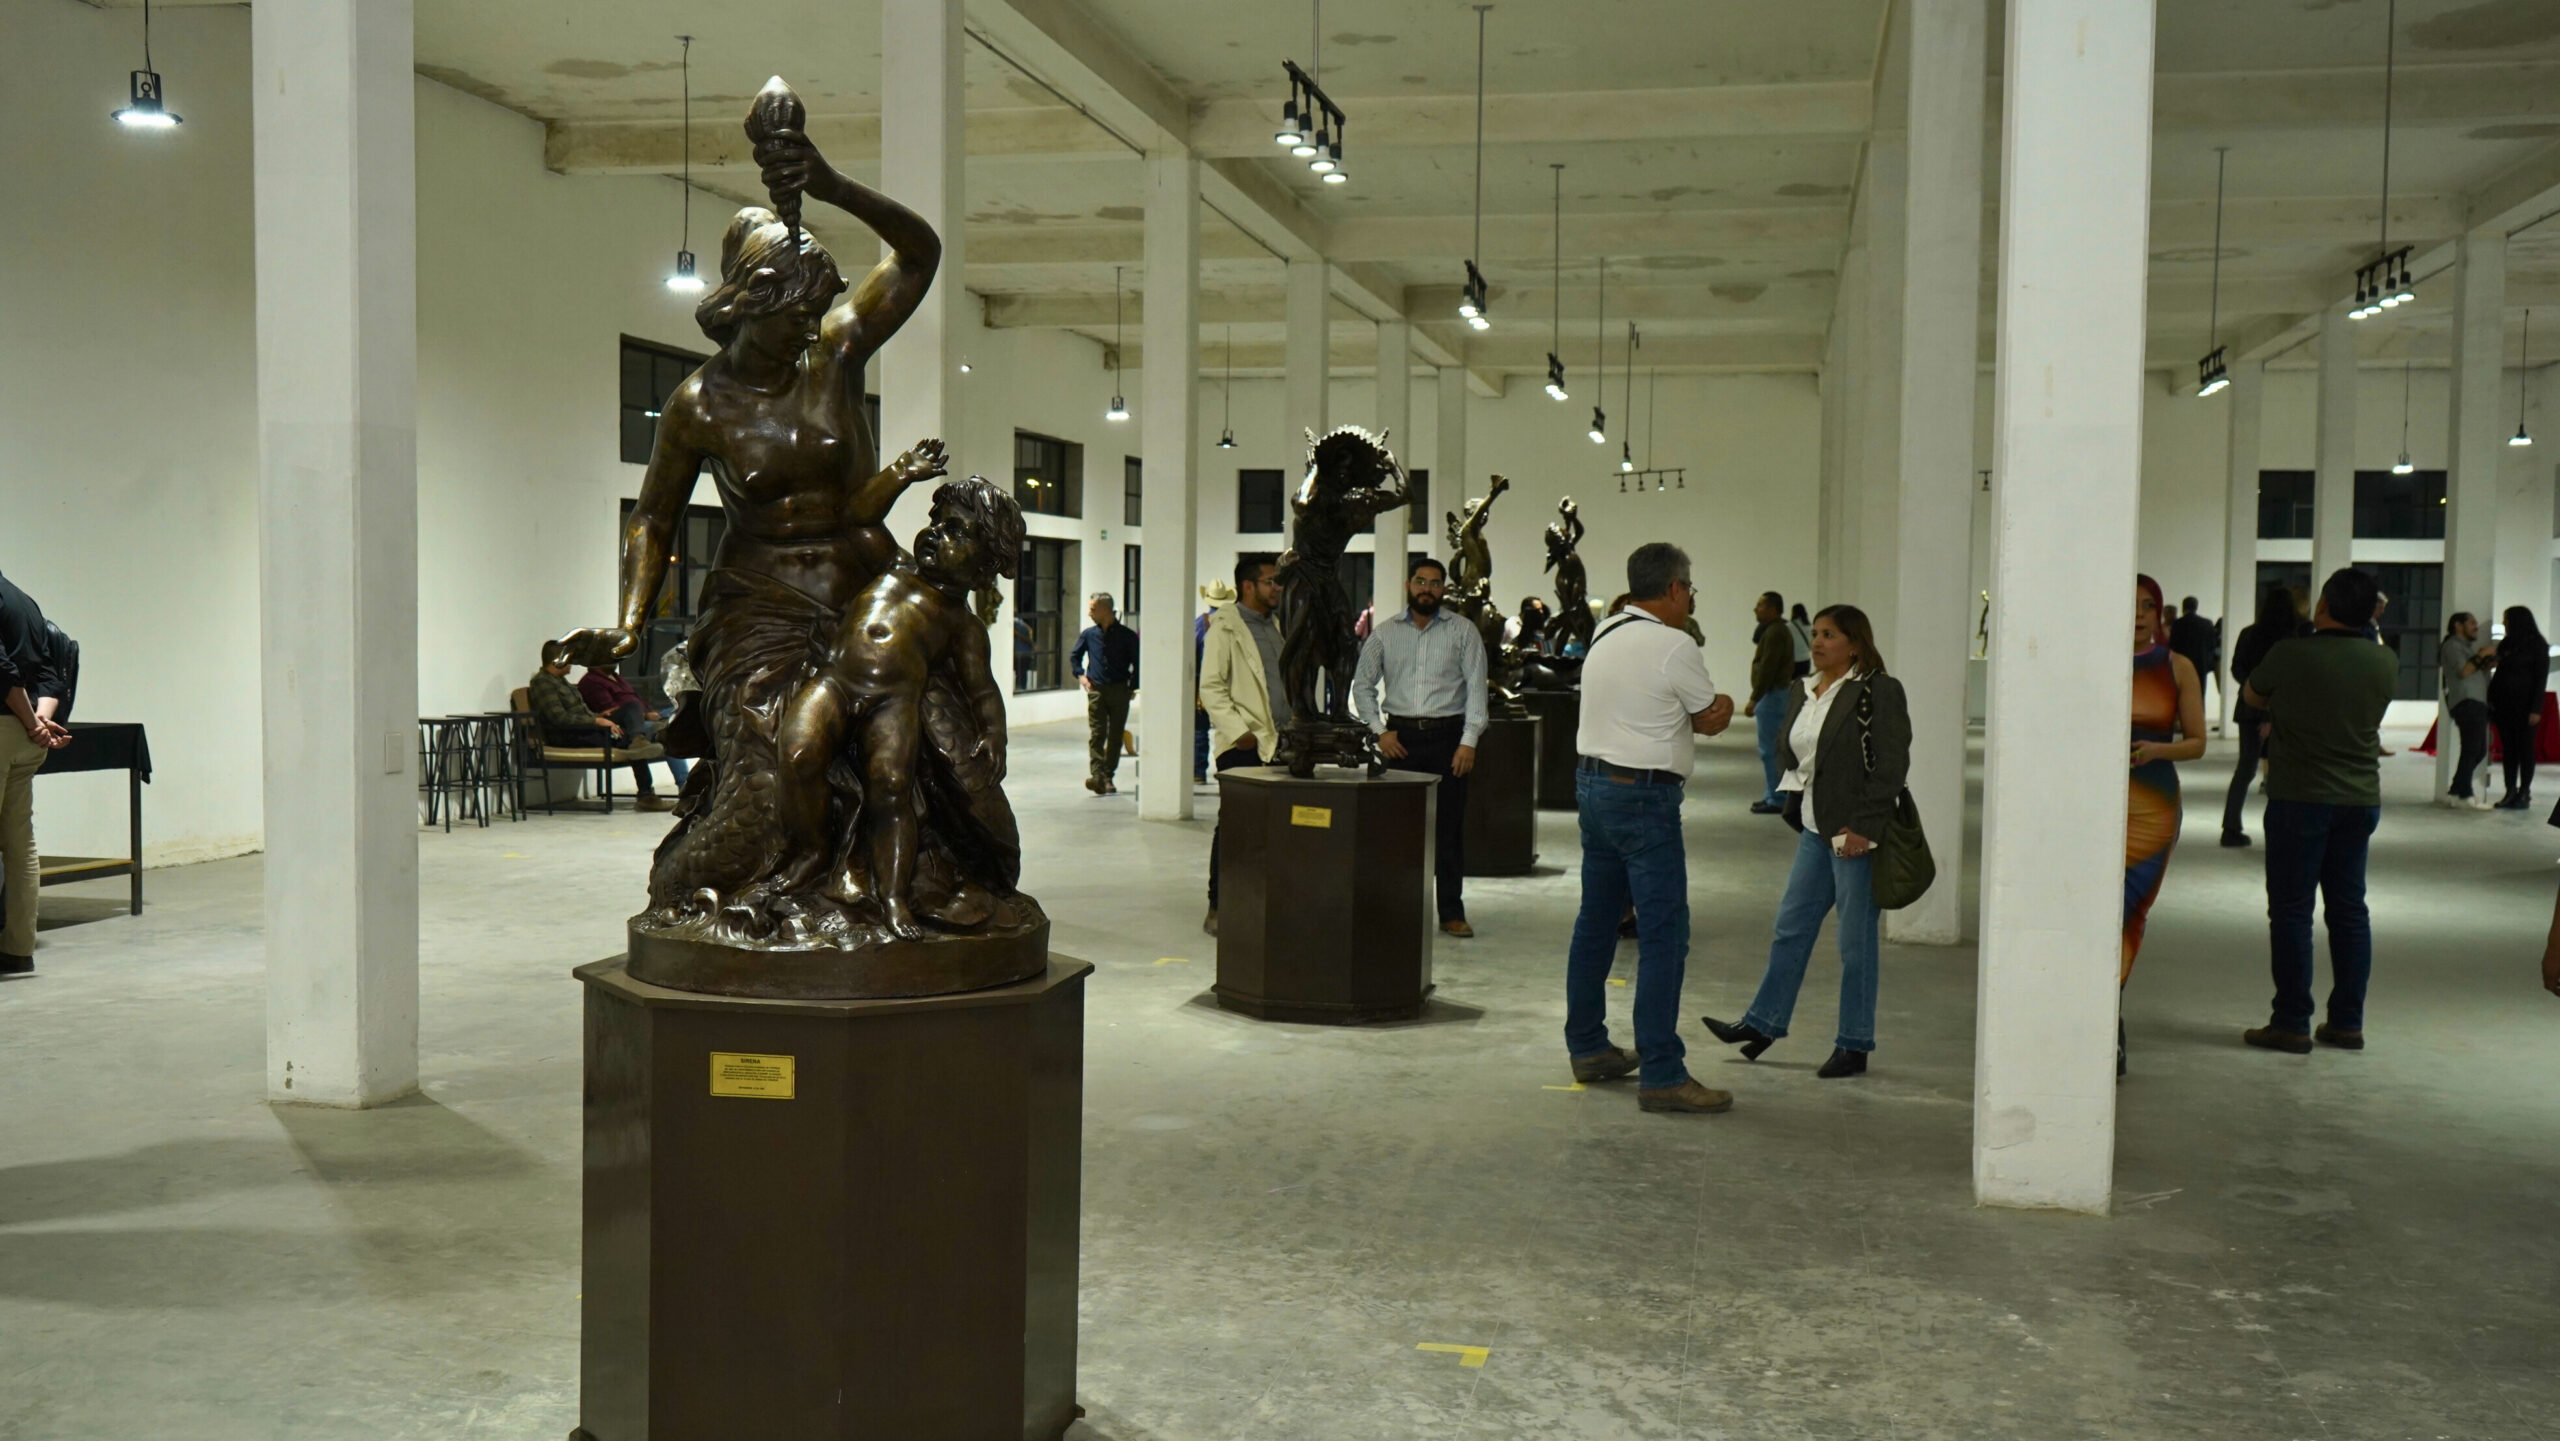 Una actividad sumamente recomendable para realizar en Torreón es visitar la exposición colectiva montada durante este mes de marzo por el Día del Escultor.